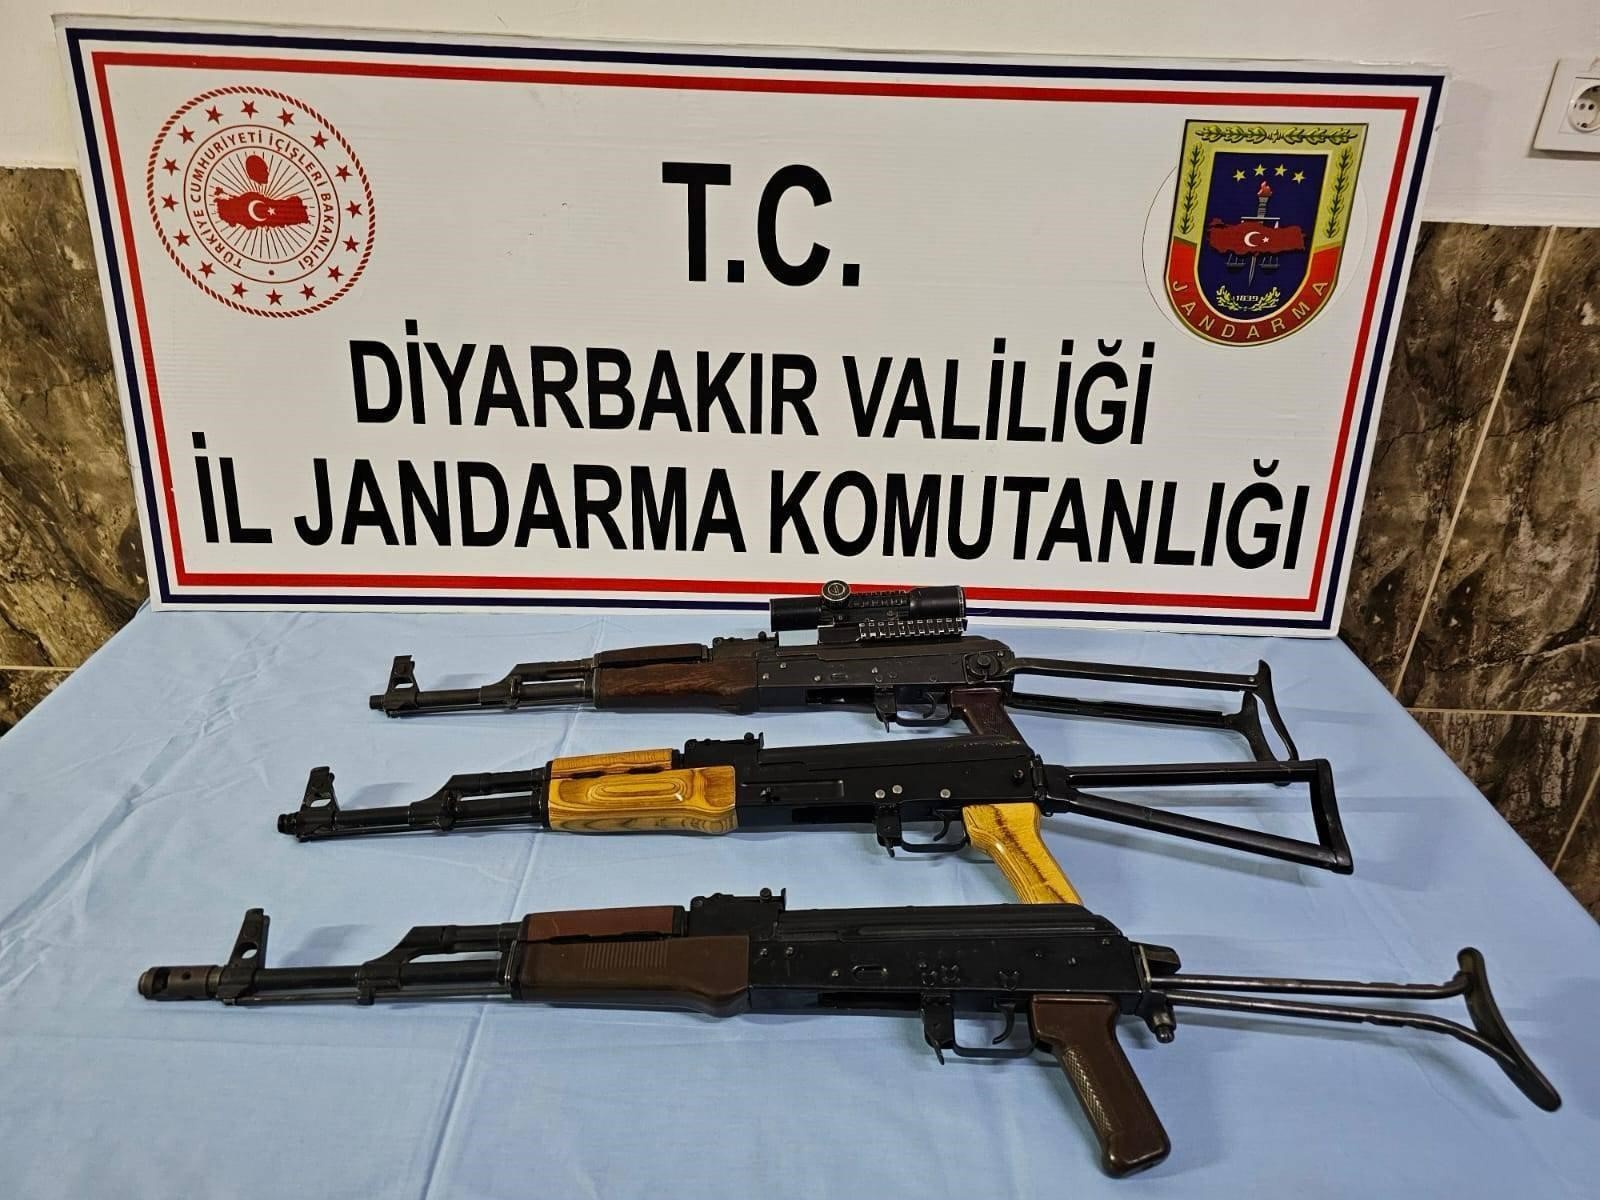 Diyarbakır’da durdurulan araçta 3 adet AK-47 ele geçirildi!